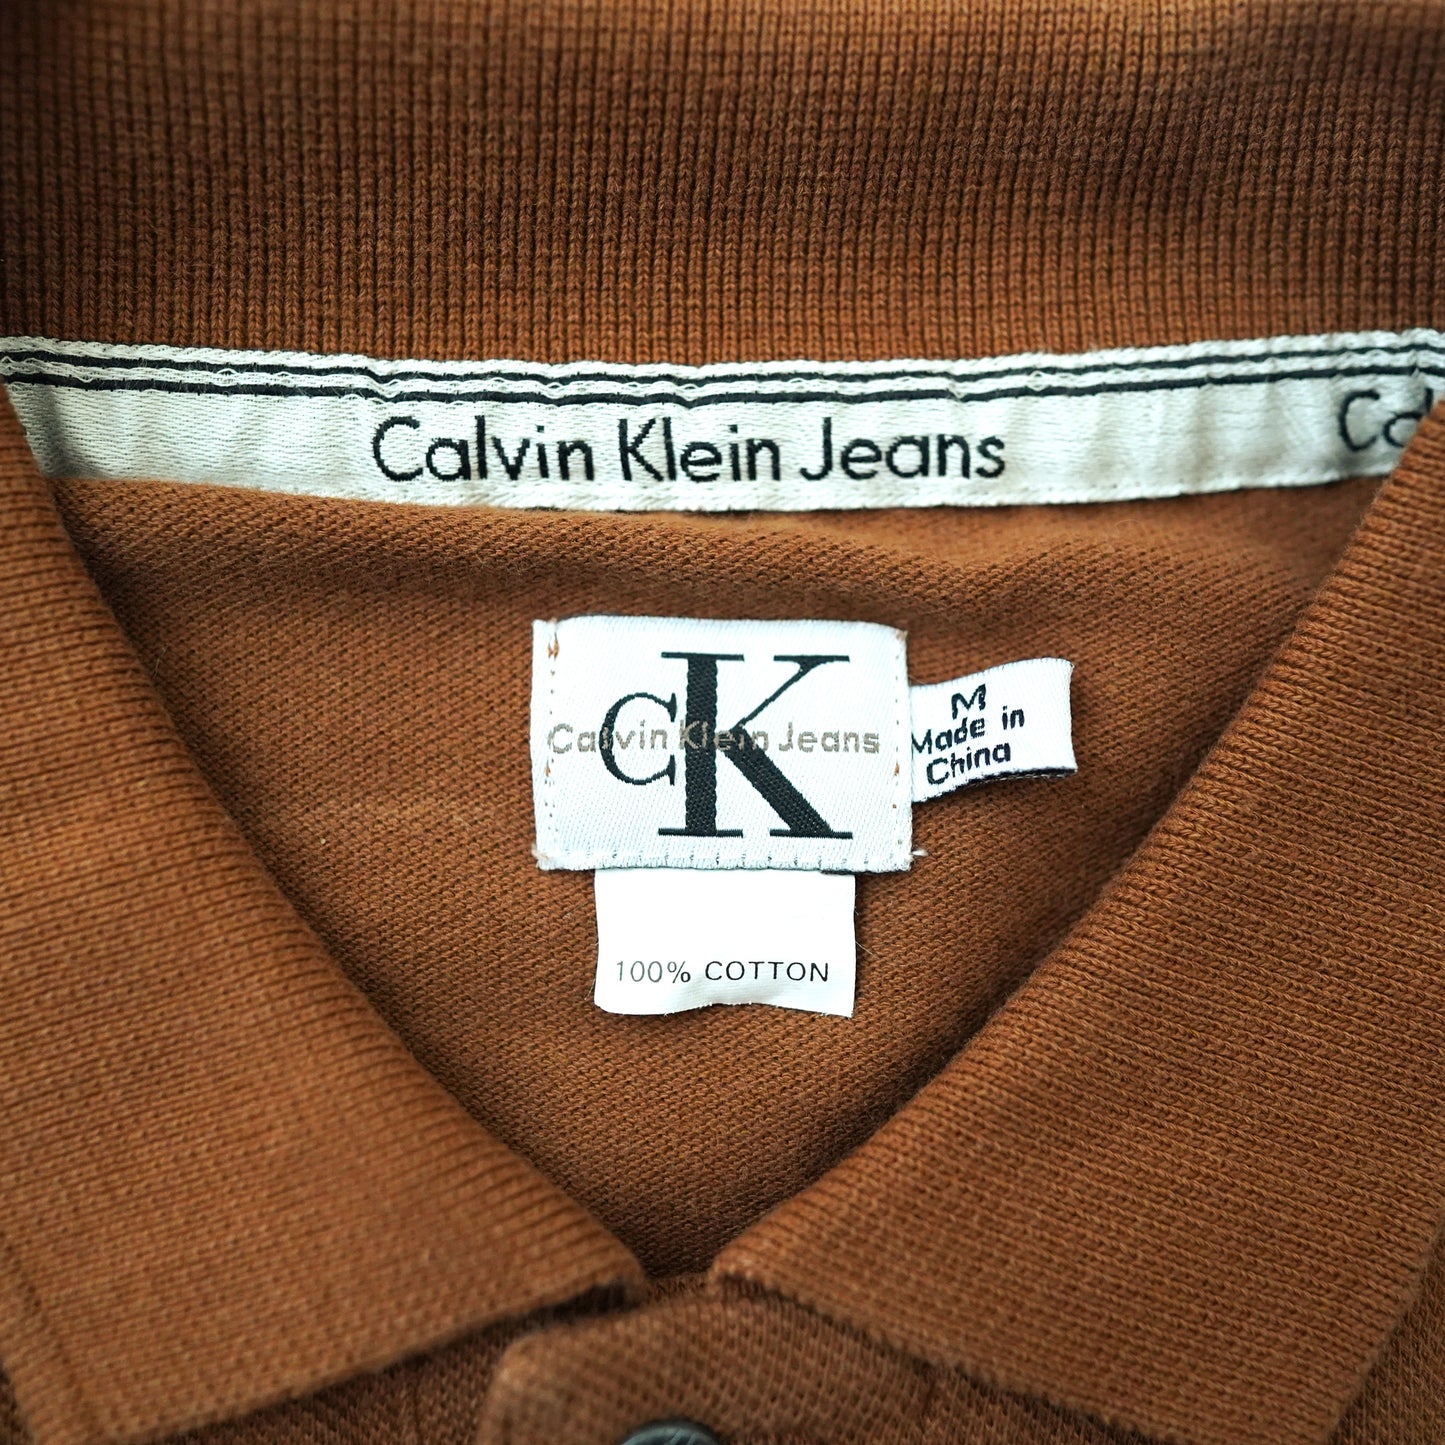 Calvin Klein polo shirt